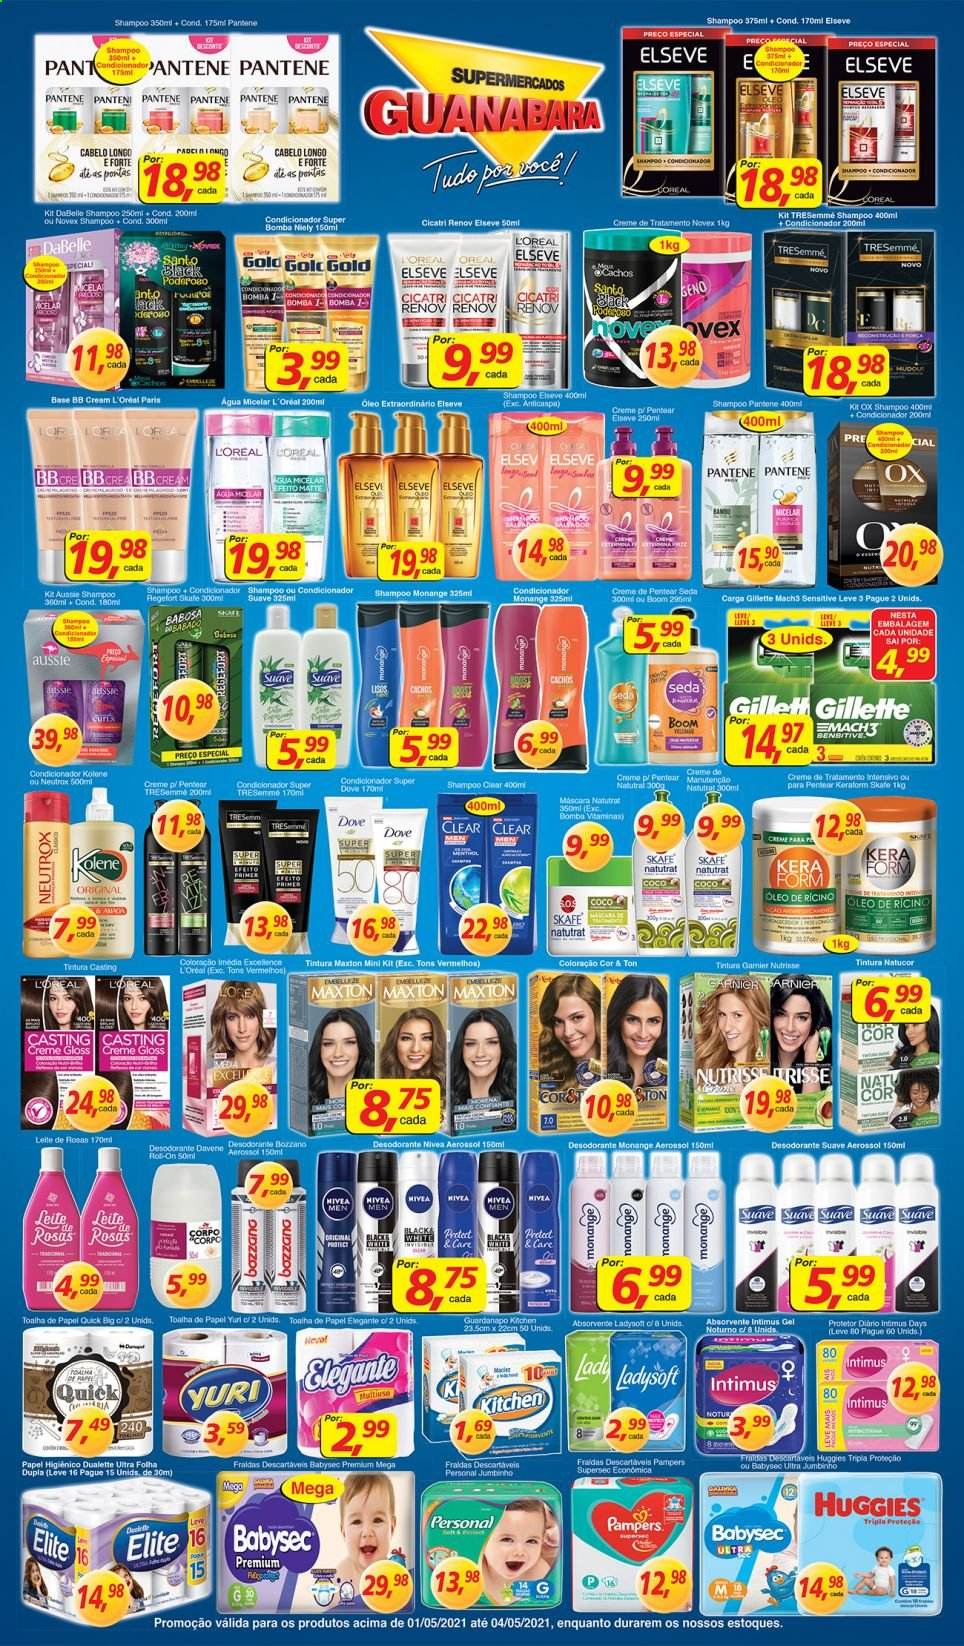 thumbnail - Folheto Supermercados Guanabara - 01/05/2021 - 04/05/2021 - Produtos em promoção - fralda descartável, Huggies, Pampers, fraldas, Nivea, papel higiénico, guardanapo, papel toalha, shampoo, Dove, L’Oréal, Intimus, pensos higiénicos, água micelar, tintura, creme de pentear, condicionador, Pantene, Elseve, máscara, BB cream, desodorante, antitranspirante, Gillette, carga para aparelho de barbear, mach3. Página 9.